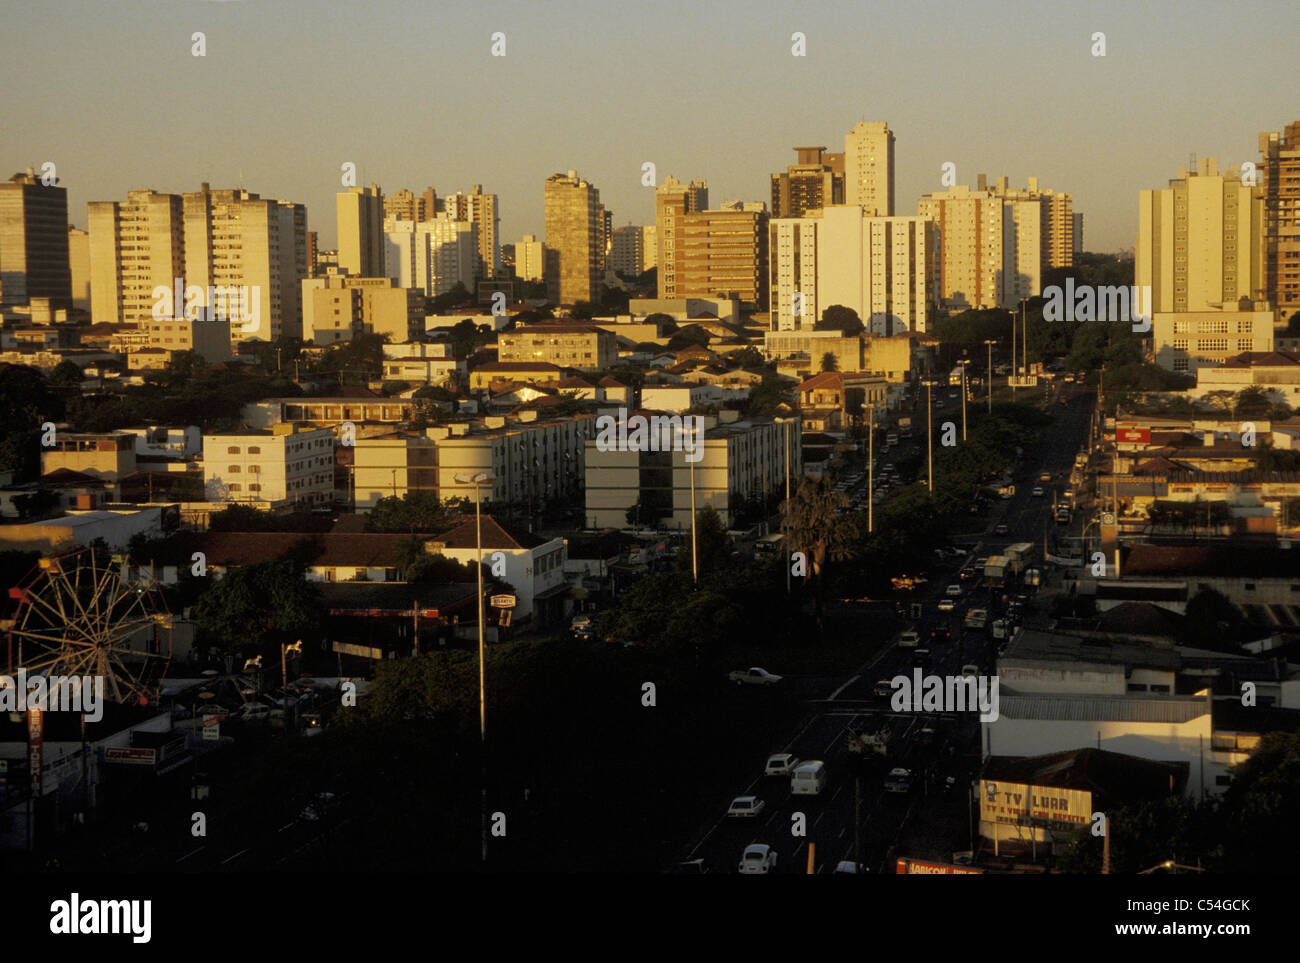 Campo Grande city, capital of Mato Grosso do Sul State, Brazil. Stock Photo